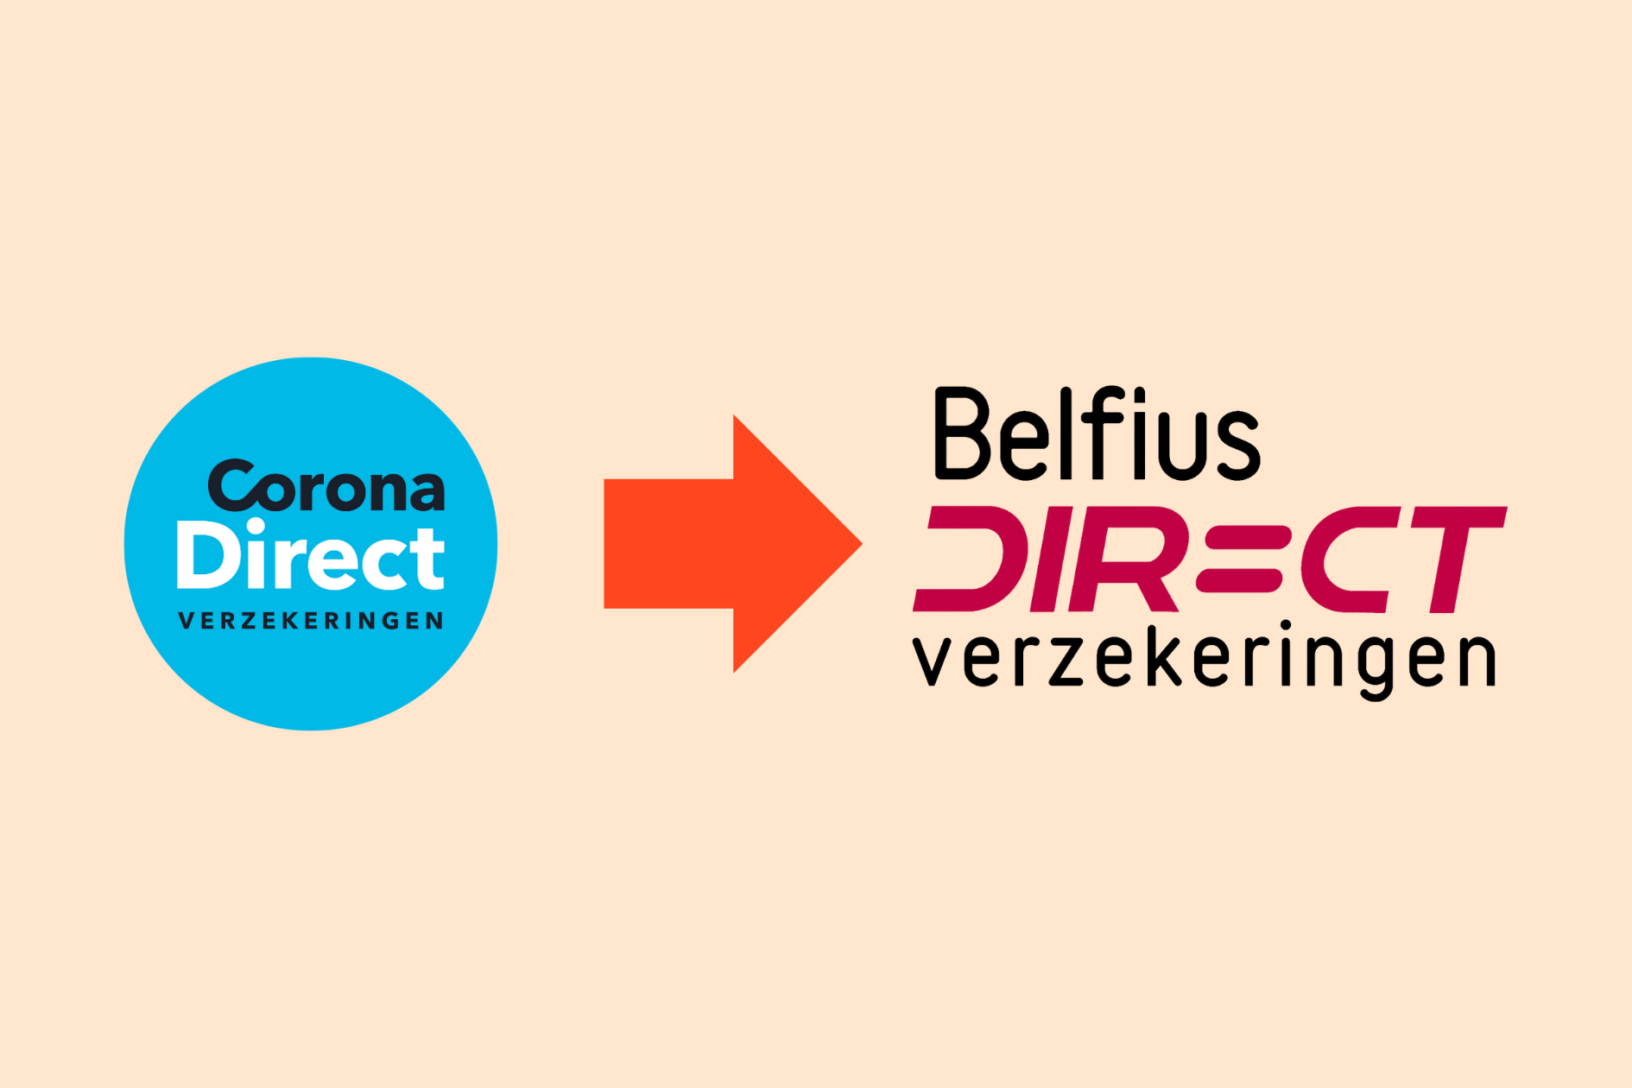 Corona Direct verandert van naam naar Belfius Direct verzekeringen